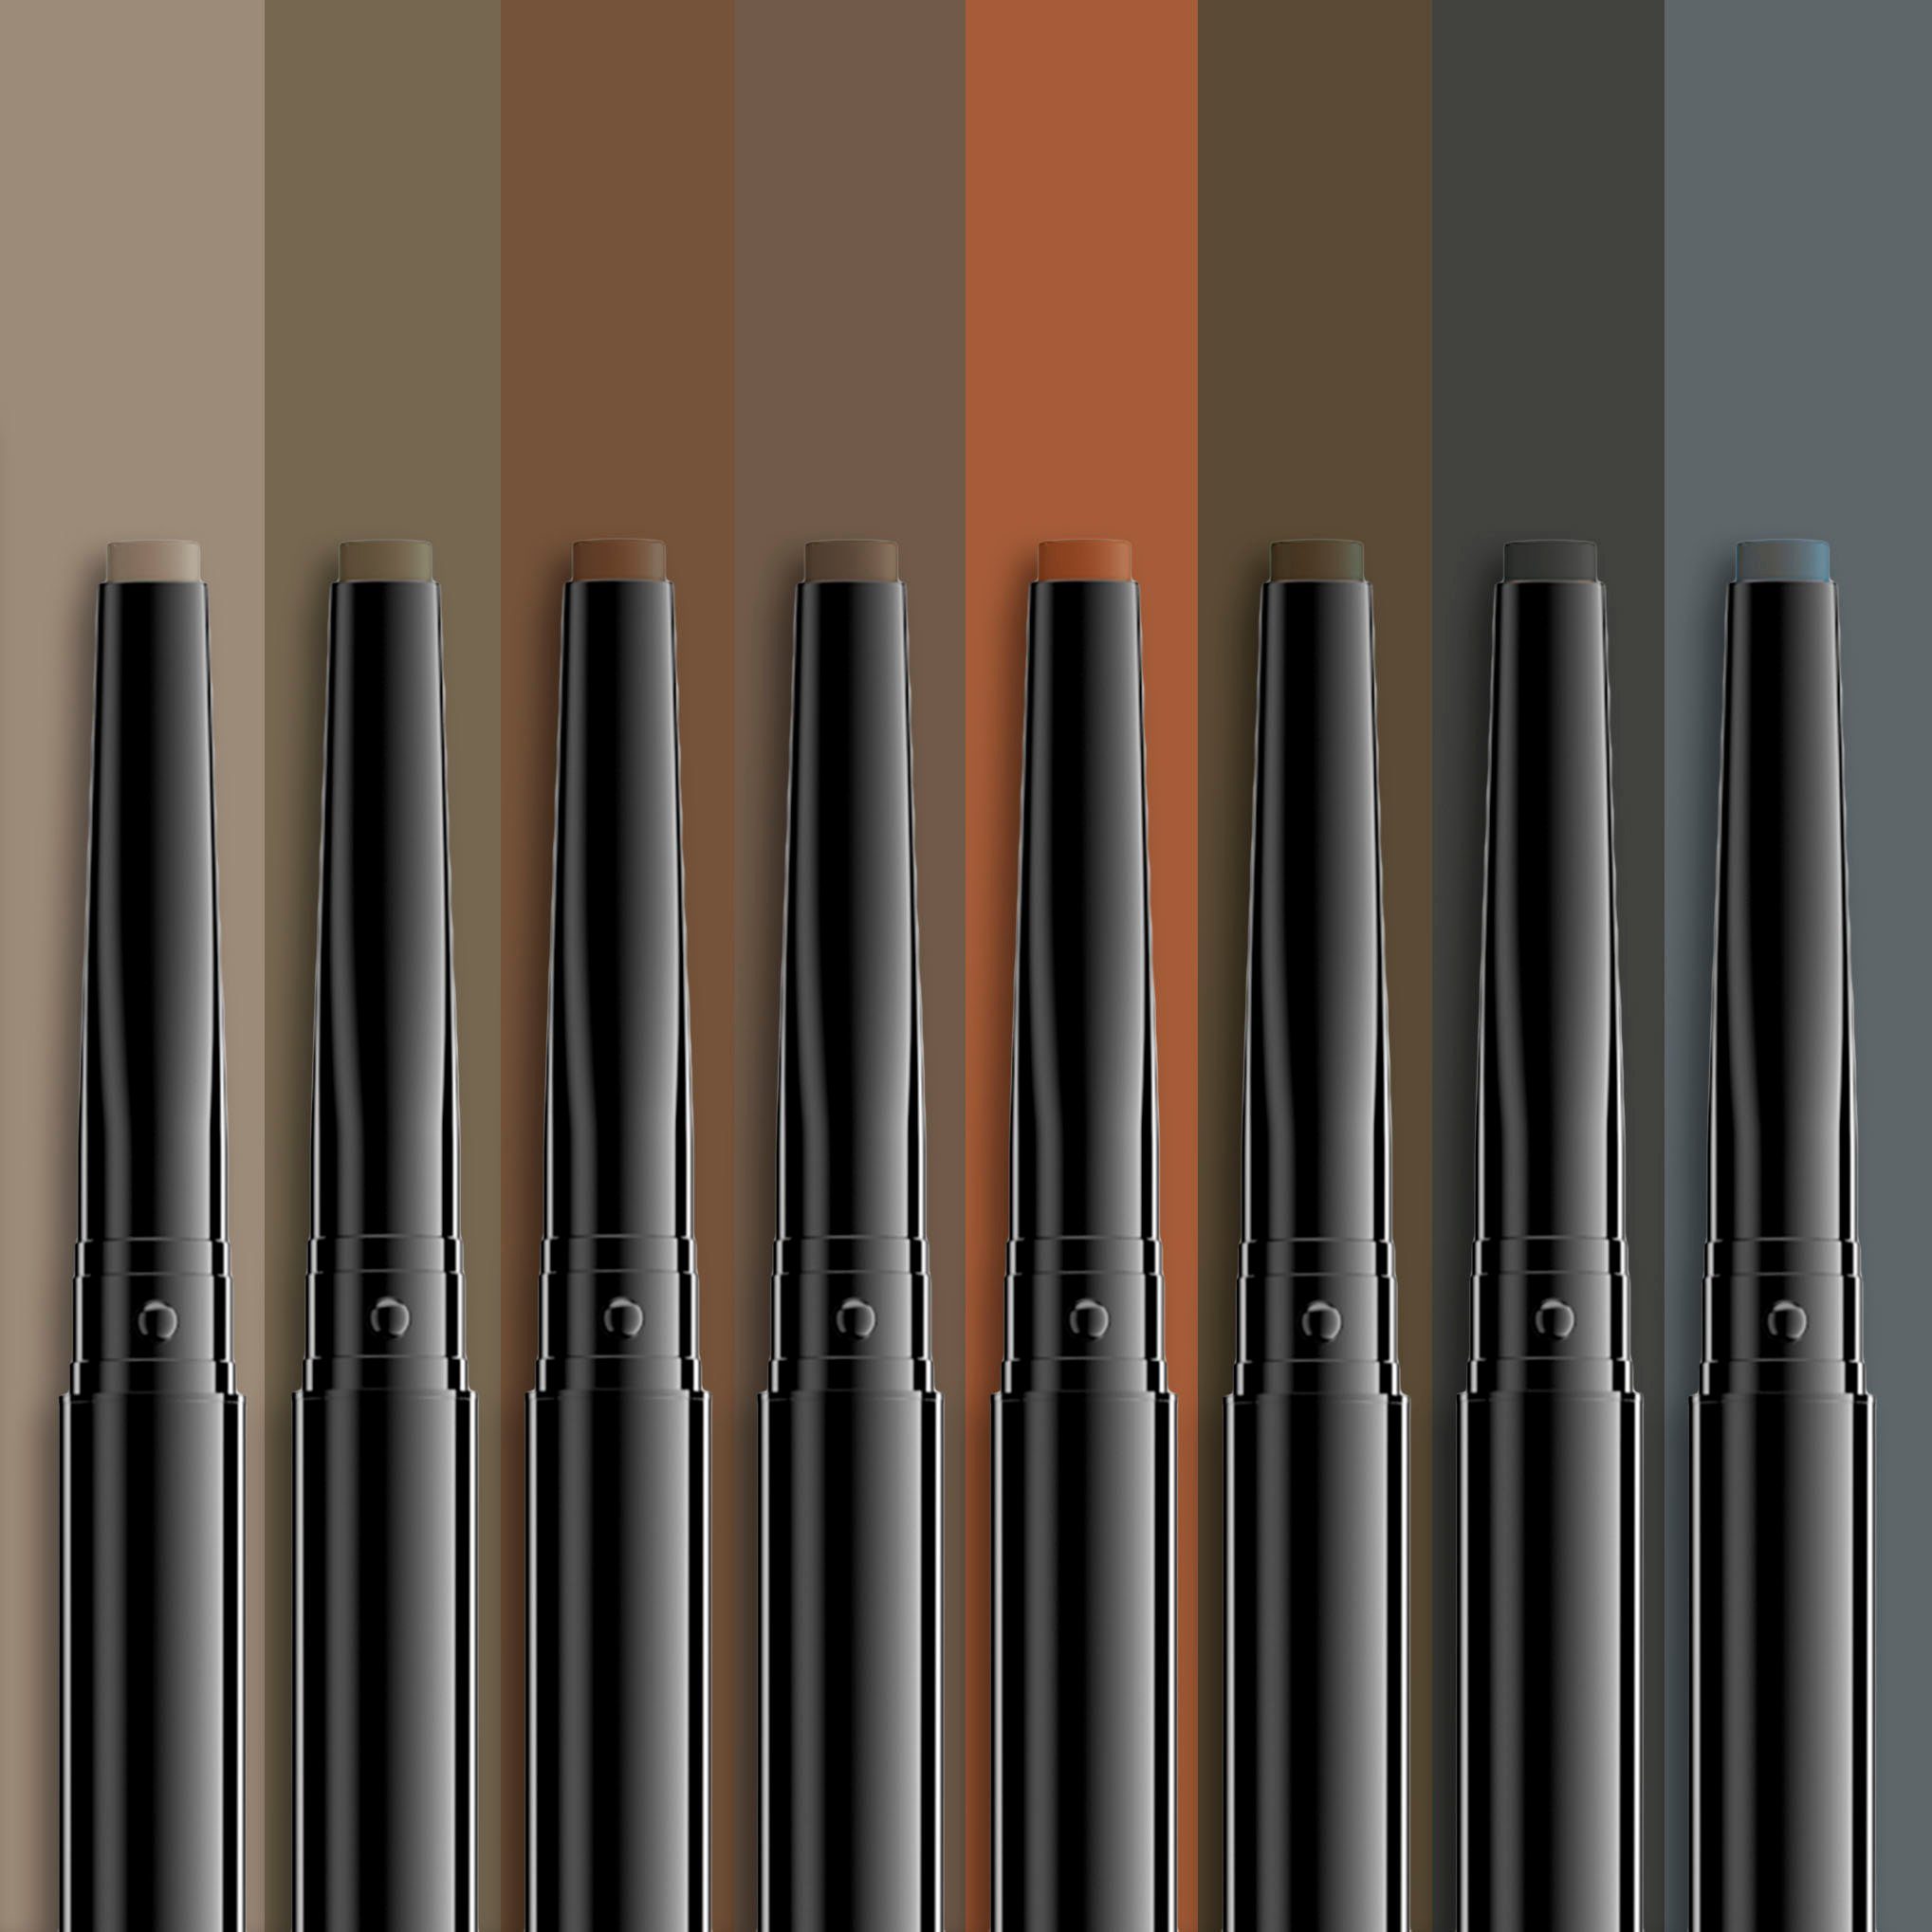 NYX Augenbrauen-Stift Makeup espresso Pencil Precision Professional Brow